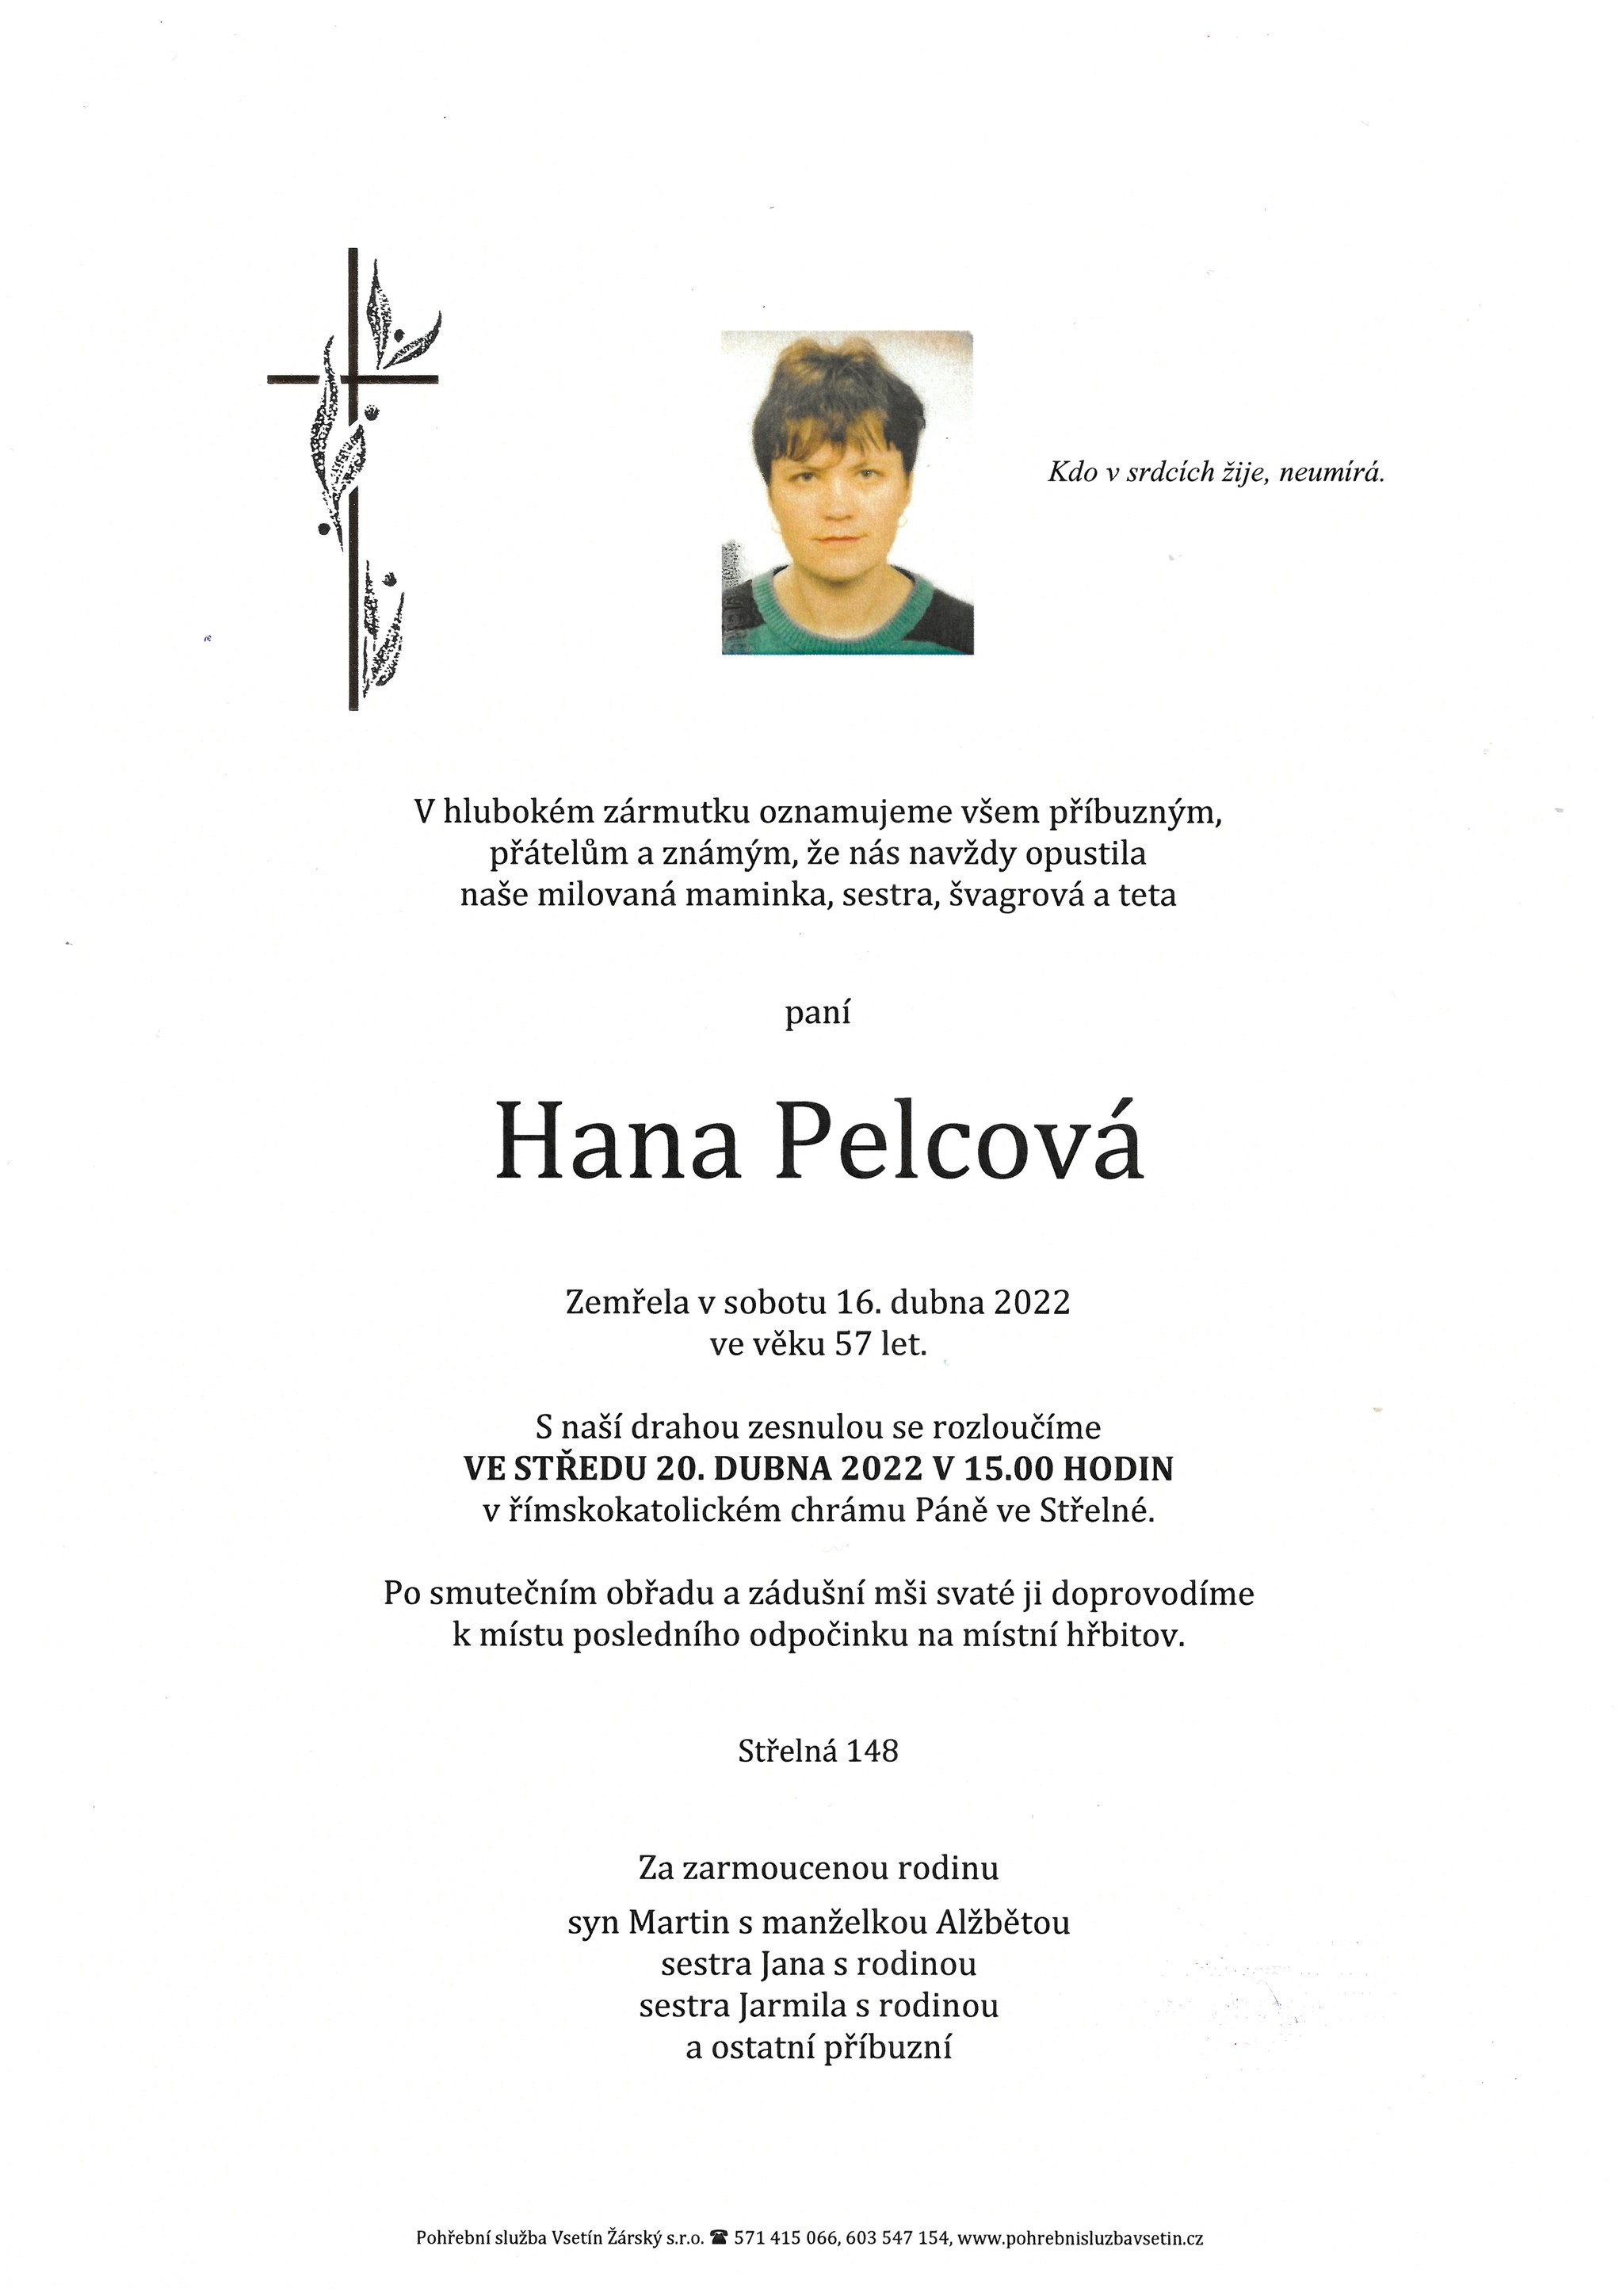 Hana Pelcová